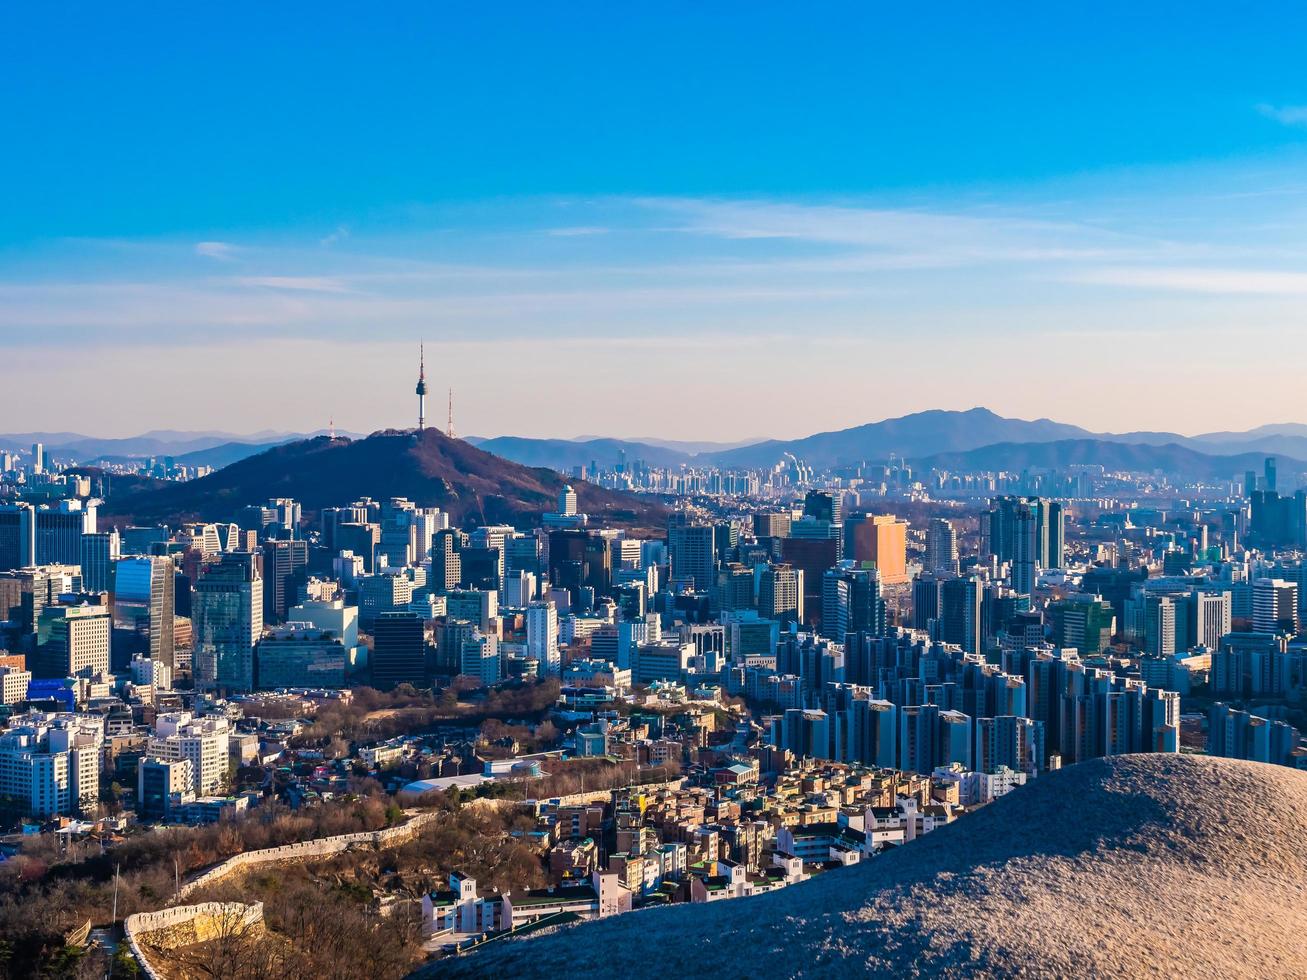 paesaggio urbano di seoul, corea del sud foto